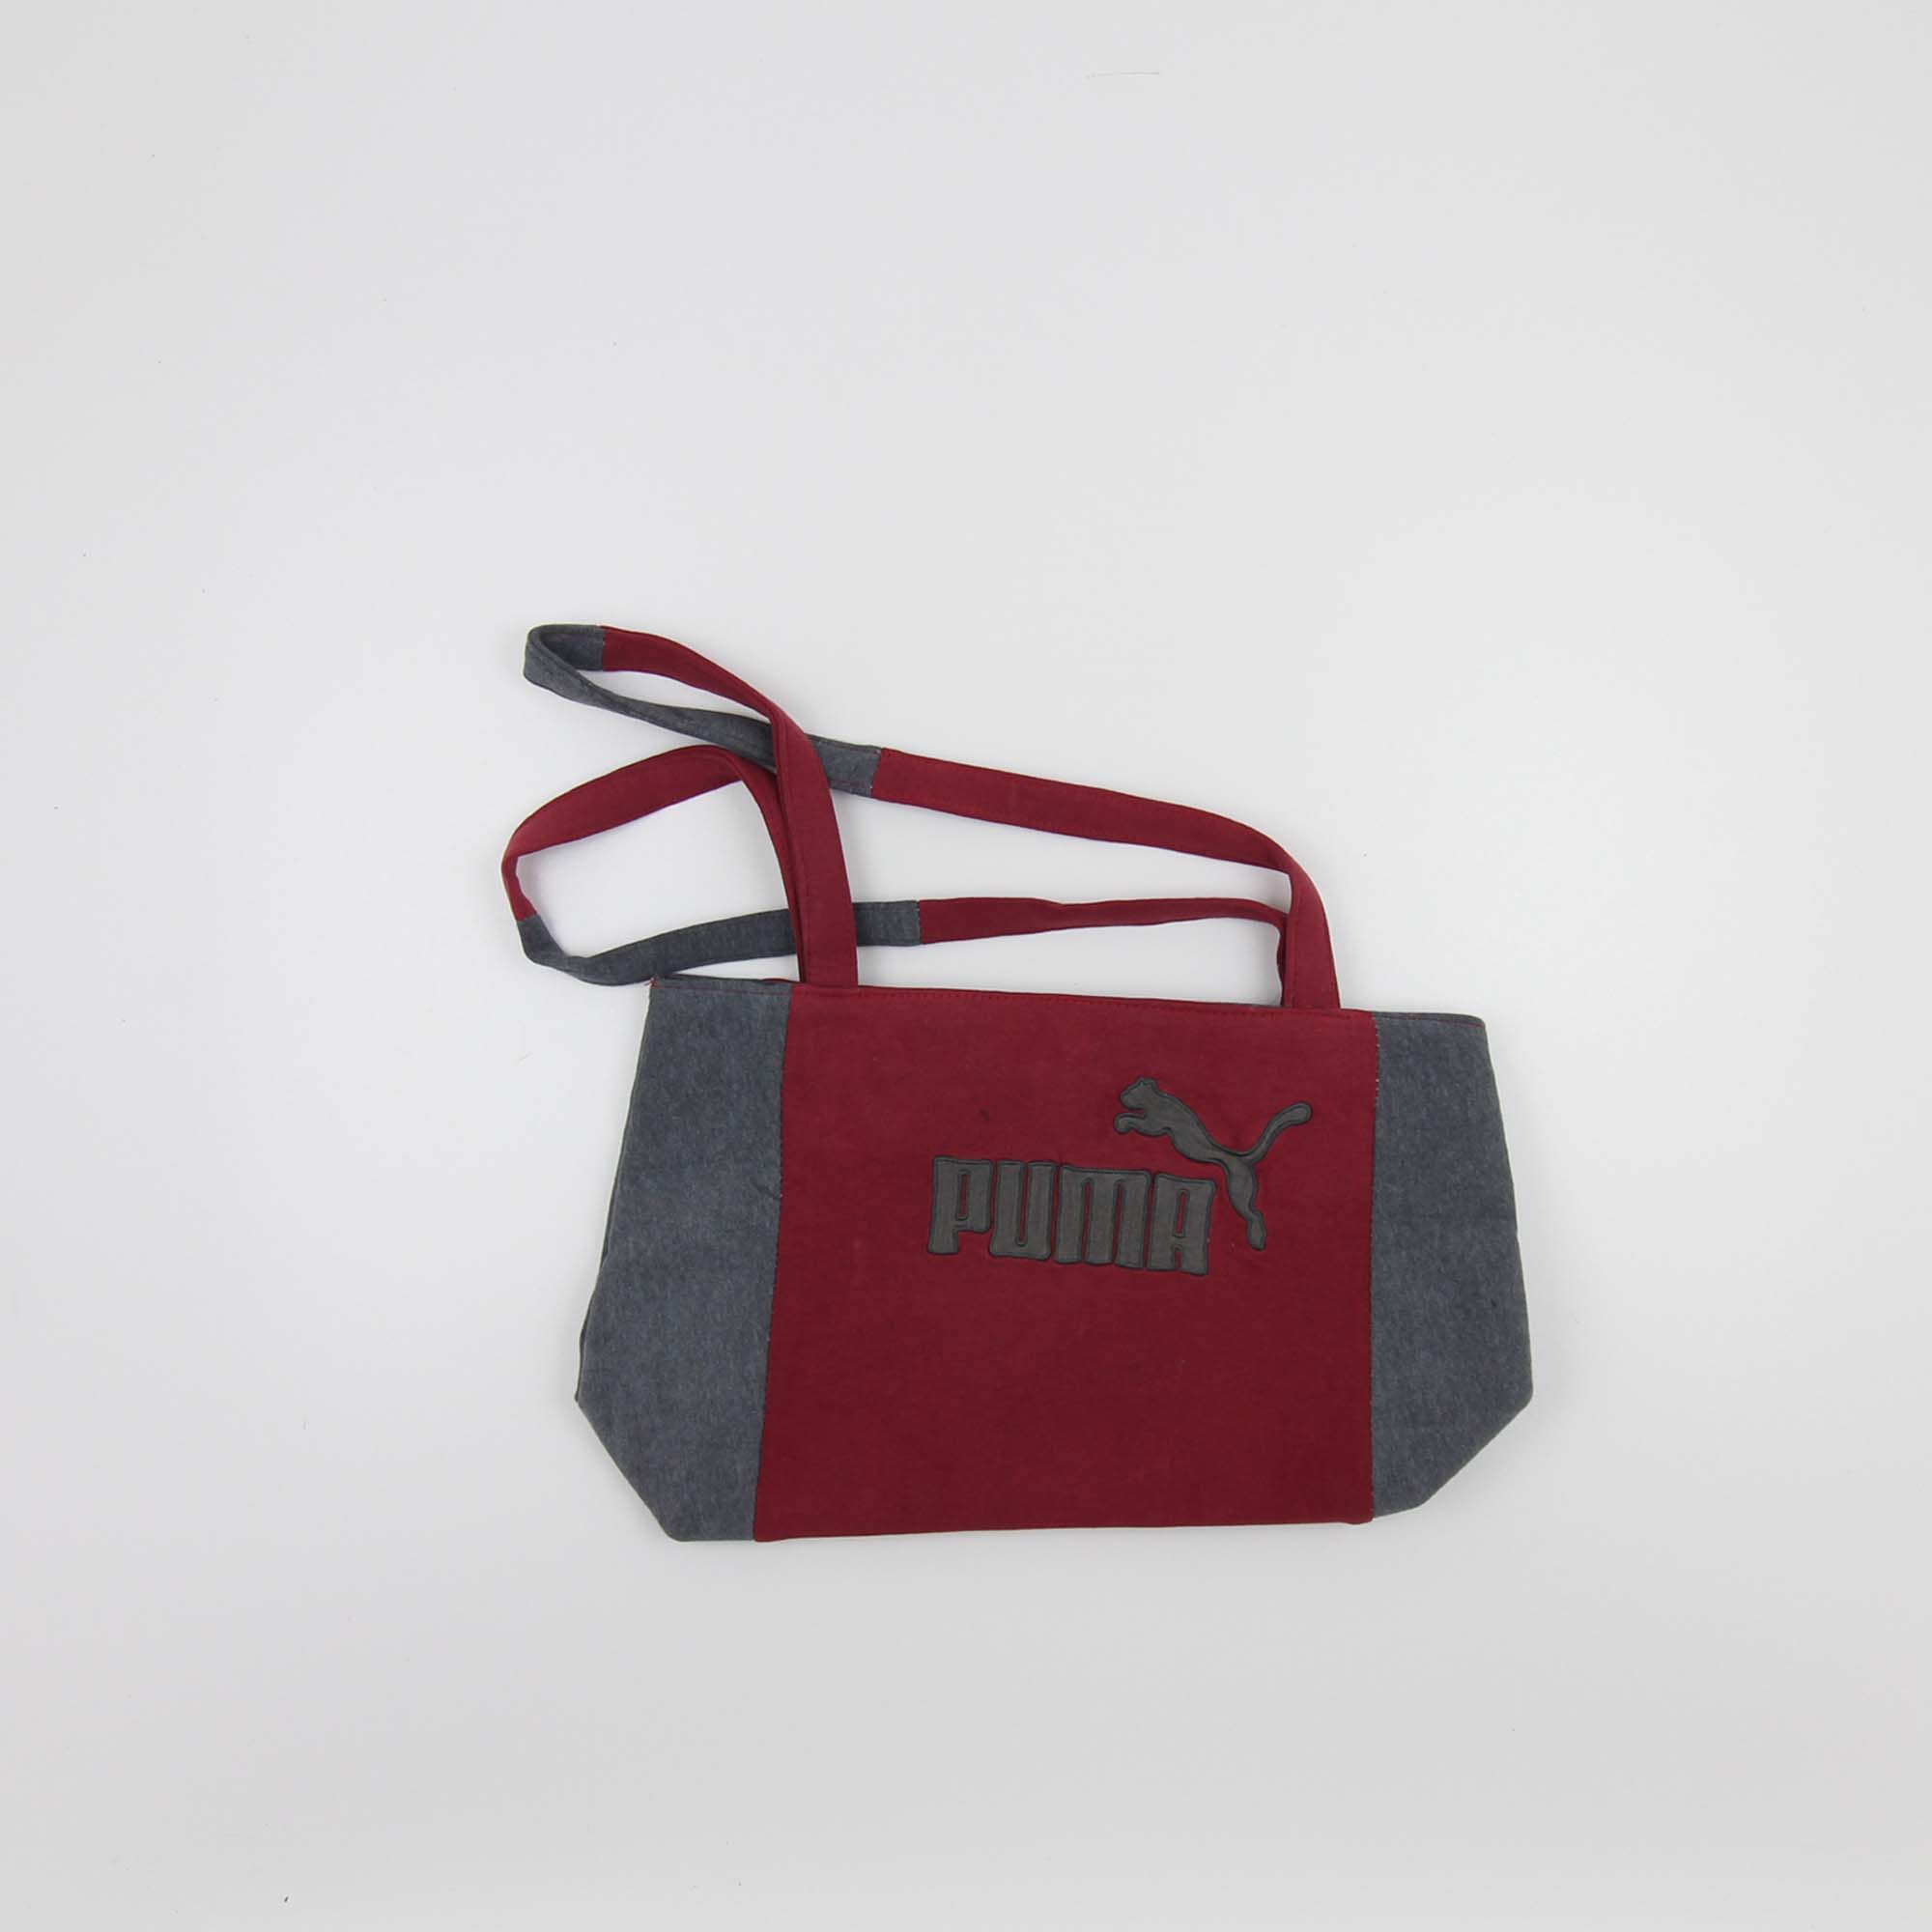 Puma Rework Bag